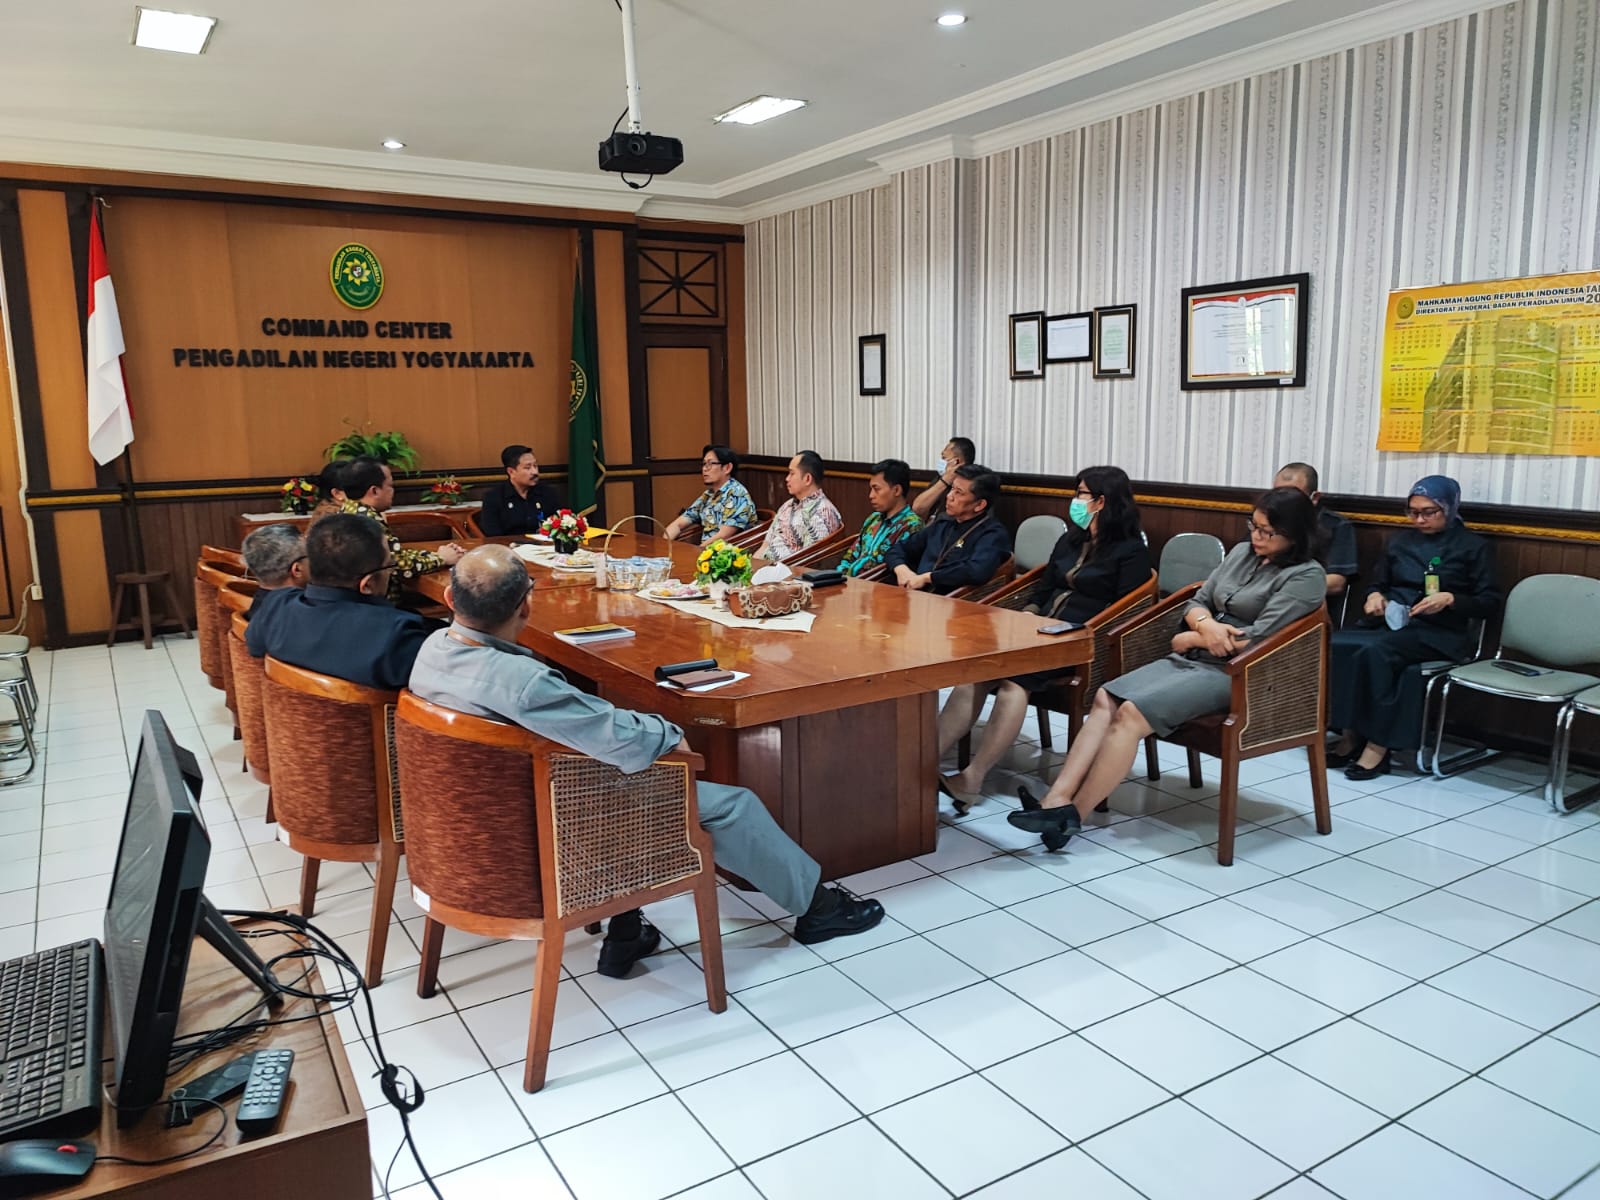 Pengadilan Negeri Yogyakarta Mendapatkan Audiensi dan Wawancara dari Badan Litbang Diklat Kumdil Mahkamah Agung RI